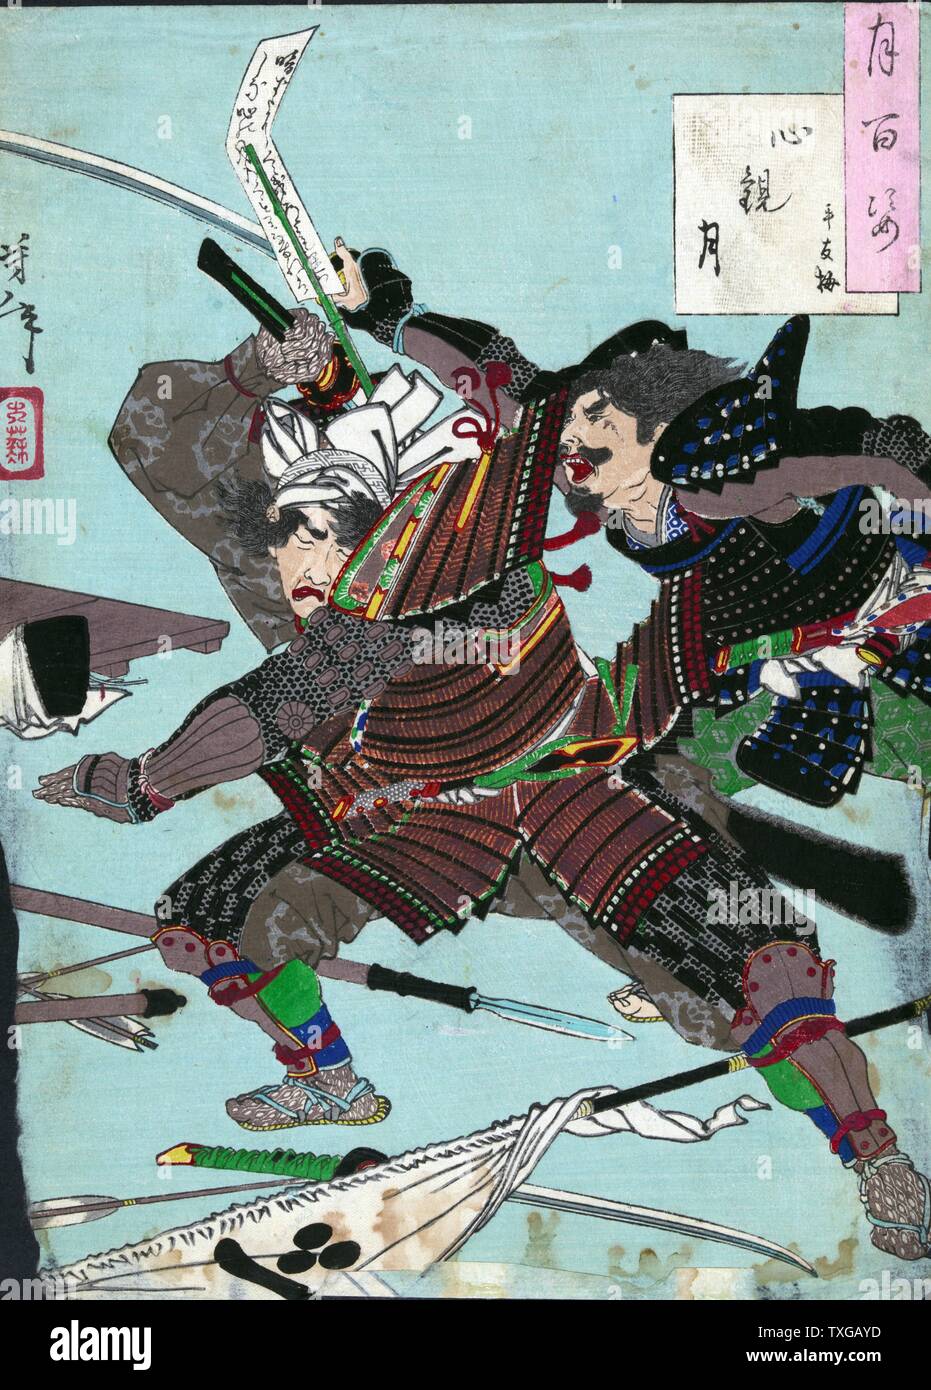 Mond gesehen durch das Herz. Drucken zeigt zwei Samurai Krieger kämpfen unter den gefallenen Waffen. Stockfoto